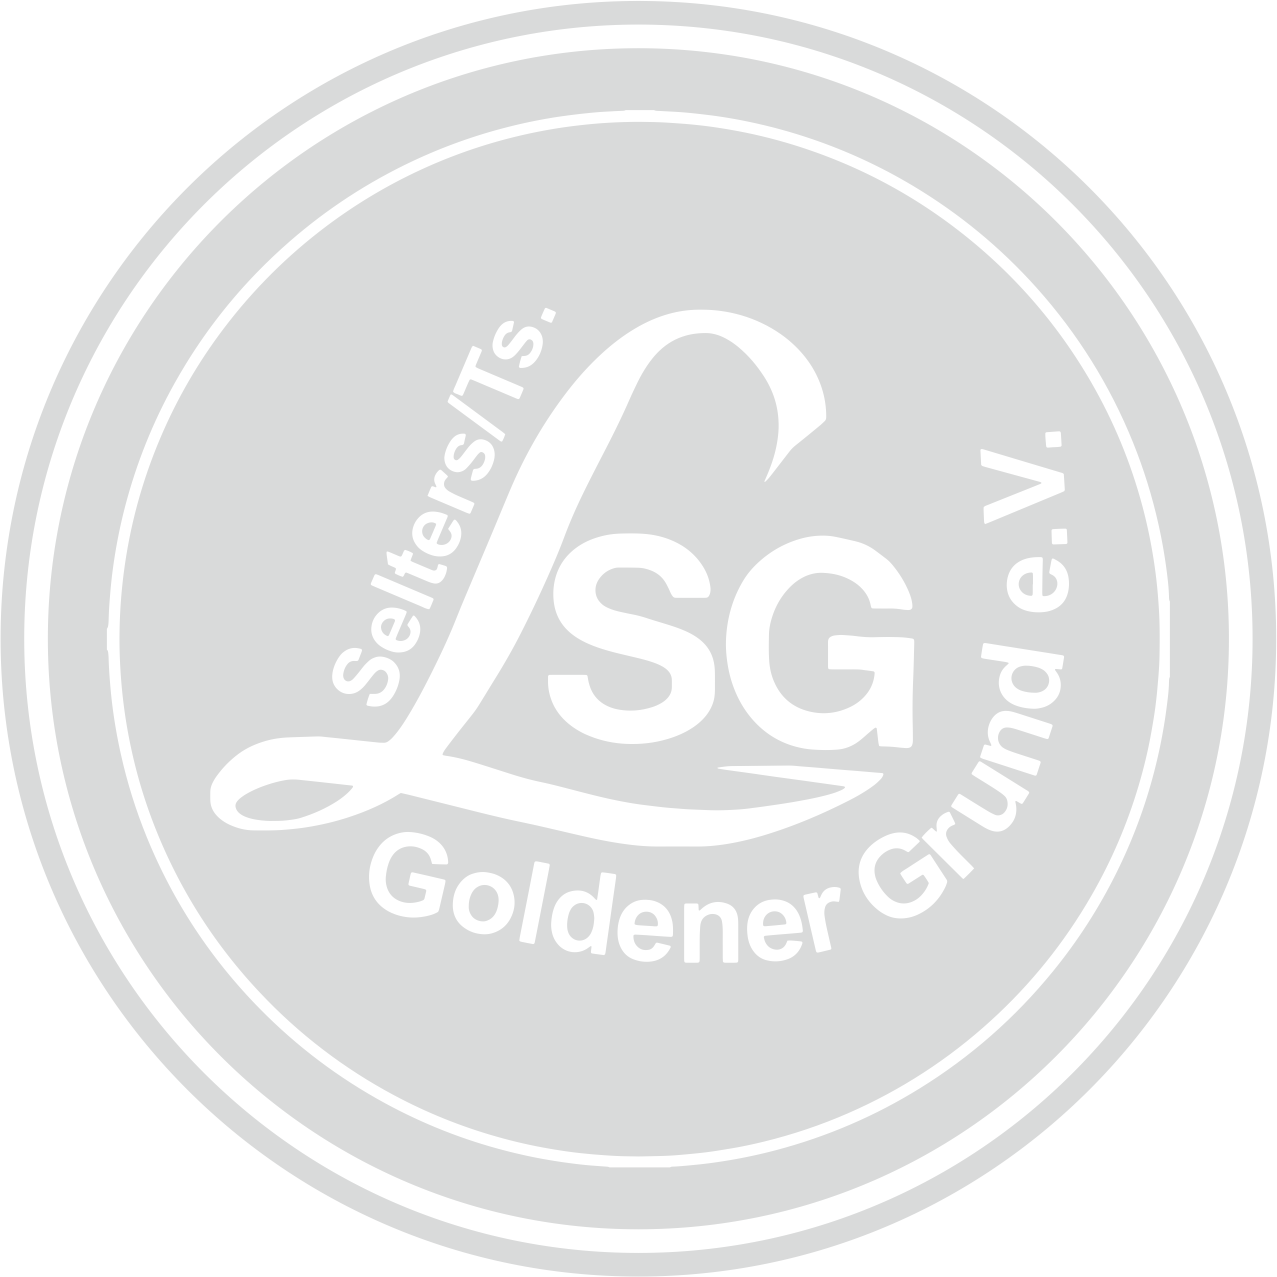 LSG Goldener Grund Logo